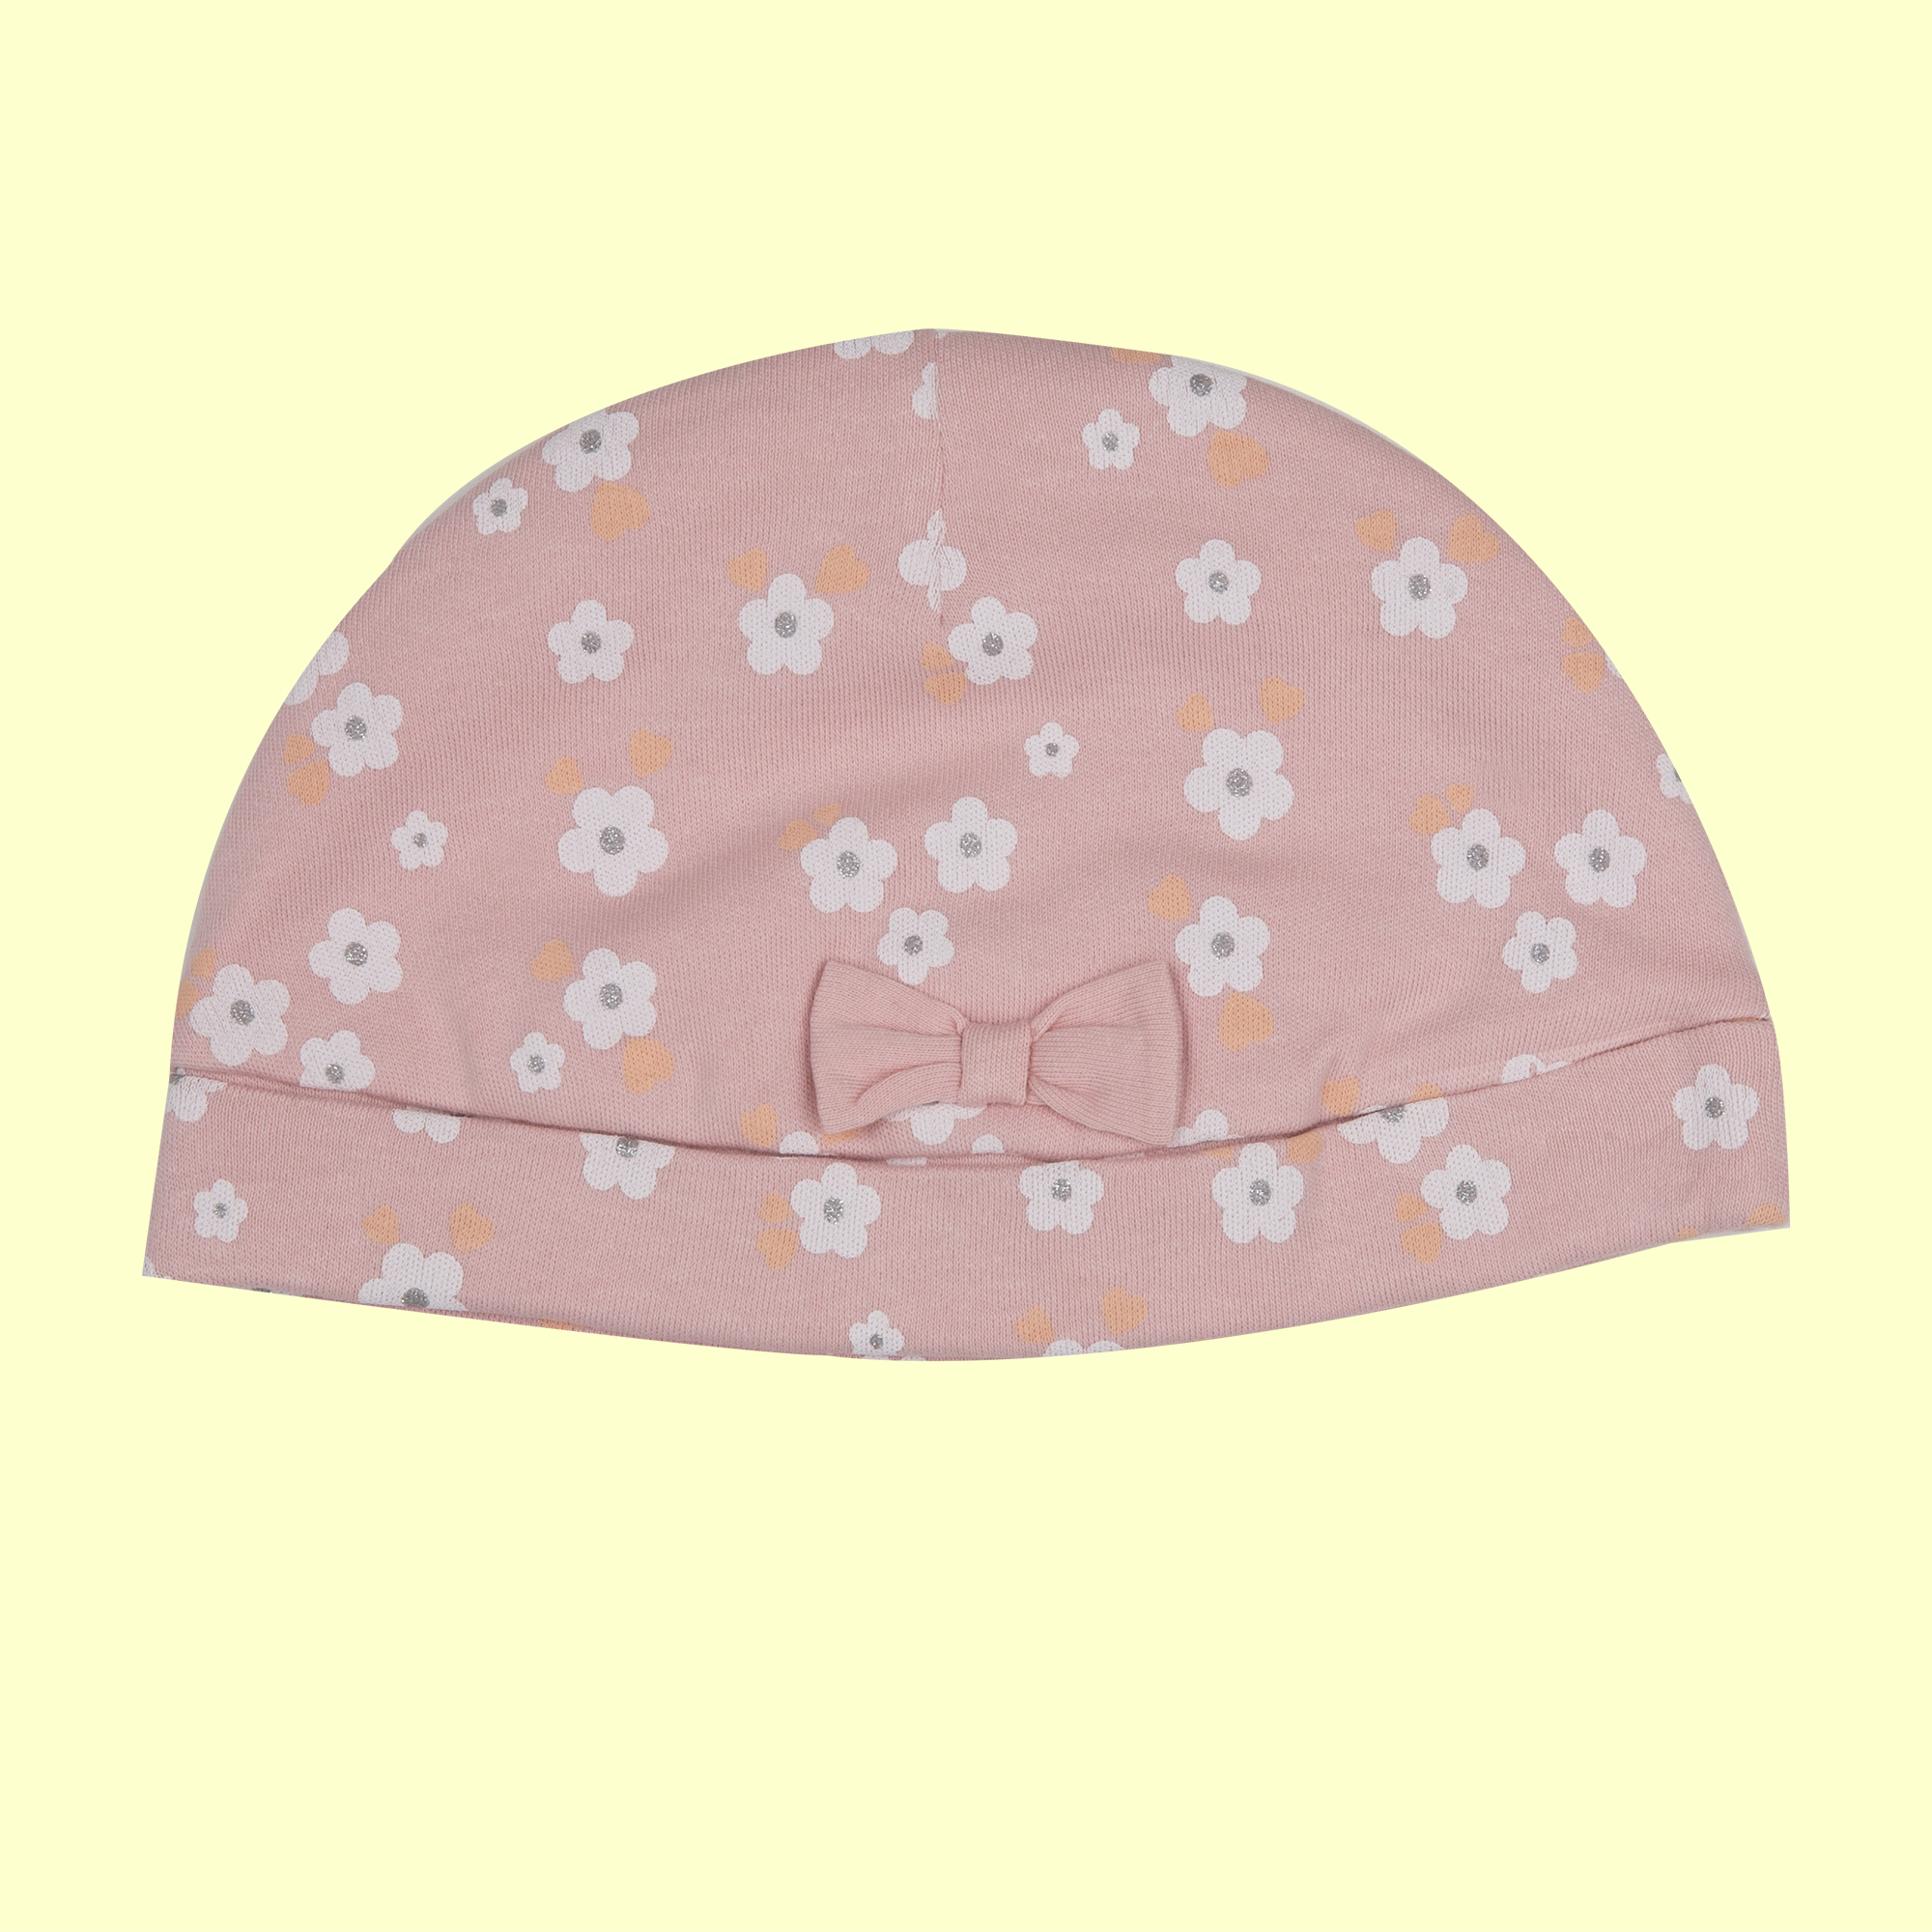 Mawi cappello caldo cotone   fiori fiocco - Mawi